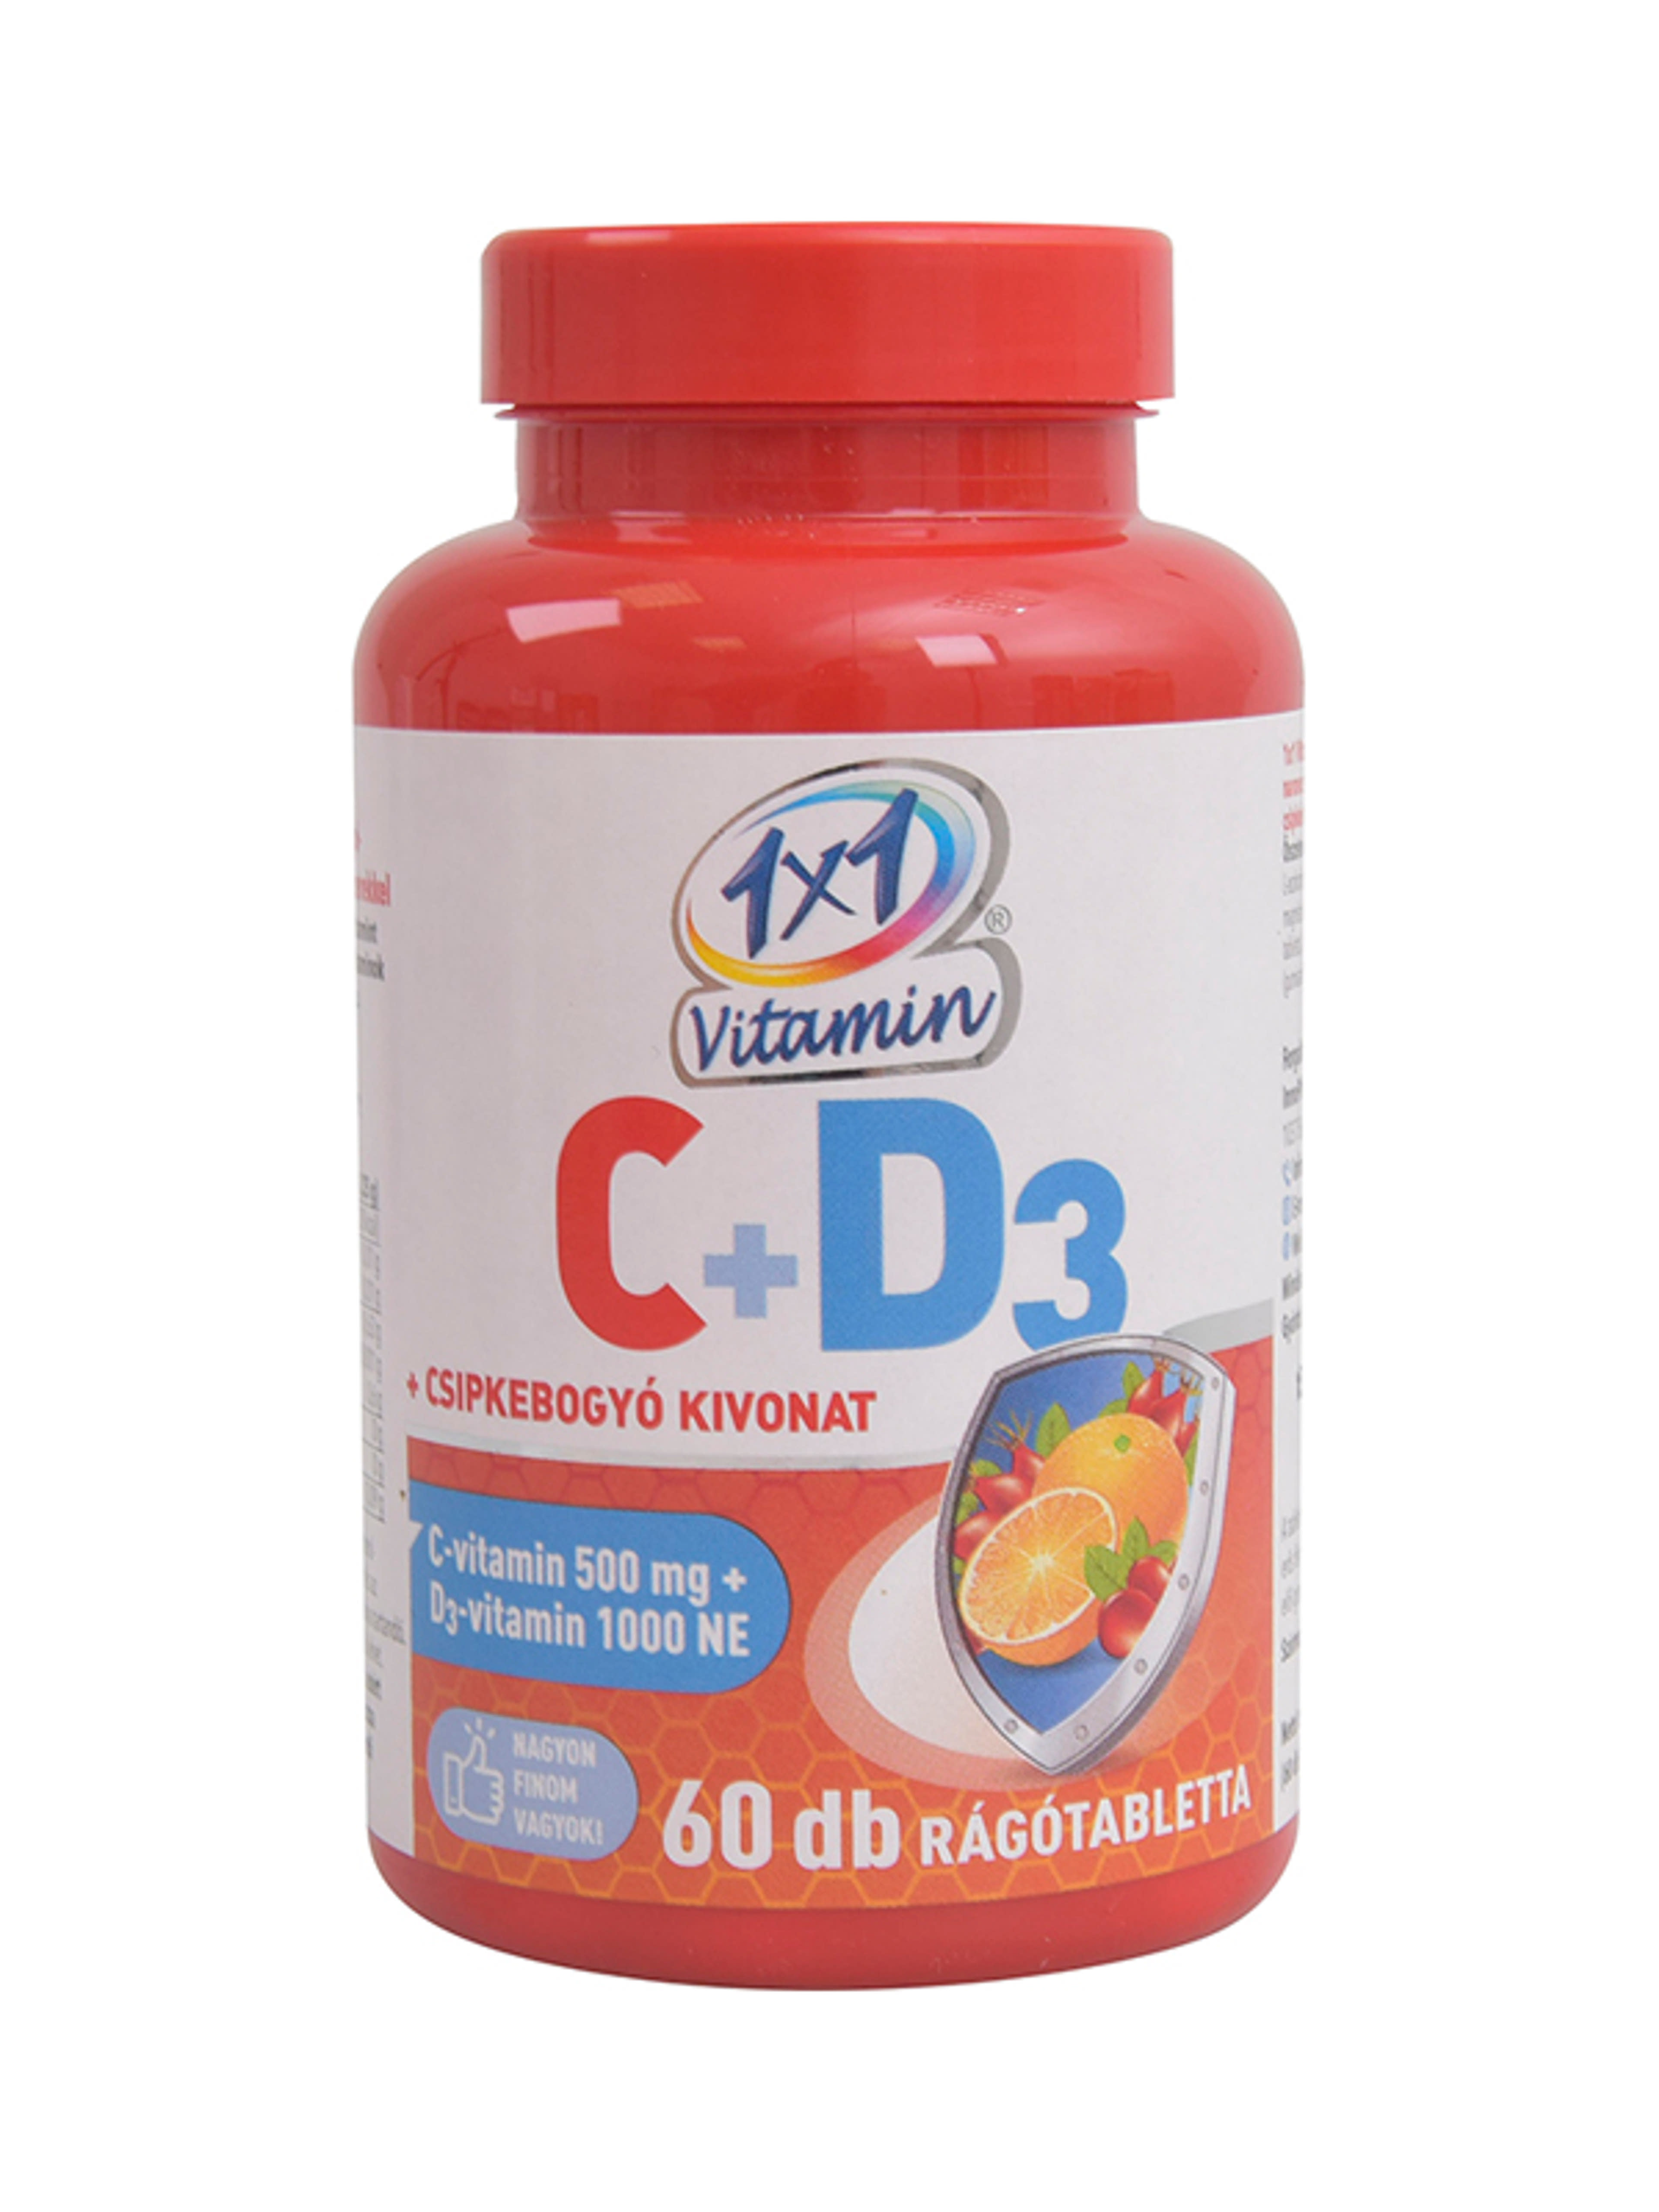 1x1 vitamin C-vitamin+D3+csipkebogyó rágótabletta - 60 db